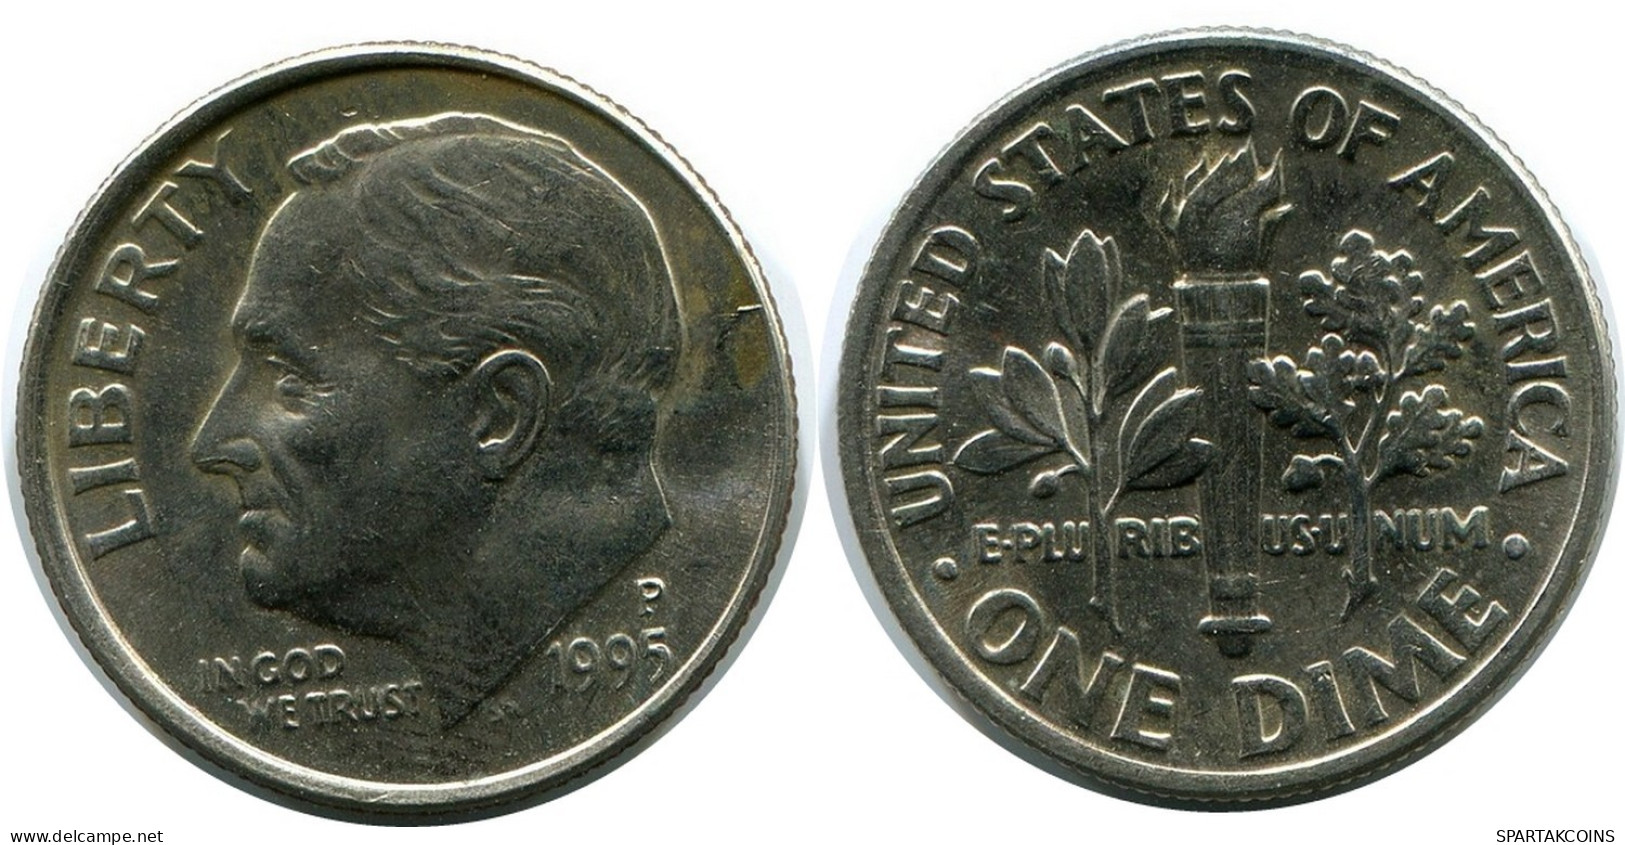 10 CENTS 1995 USA Coin #AR263.U.A - 2, 3 & 20 Cent